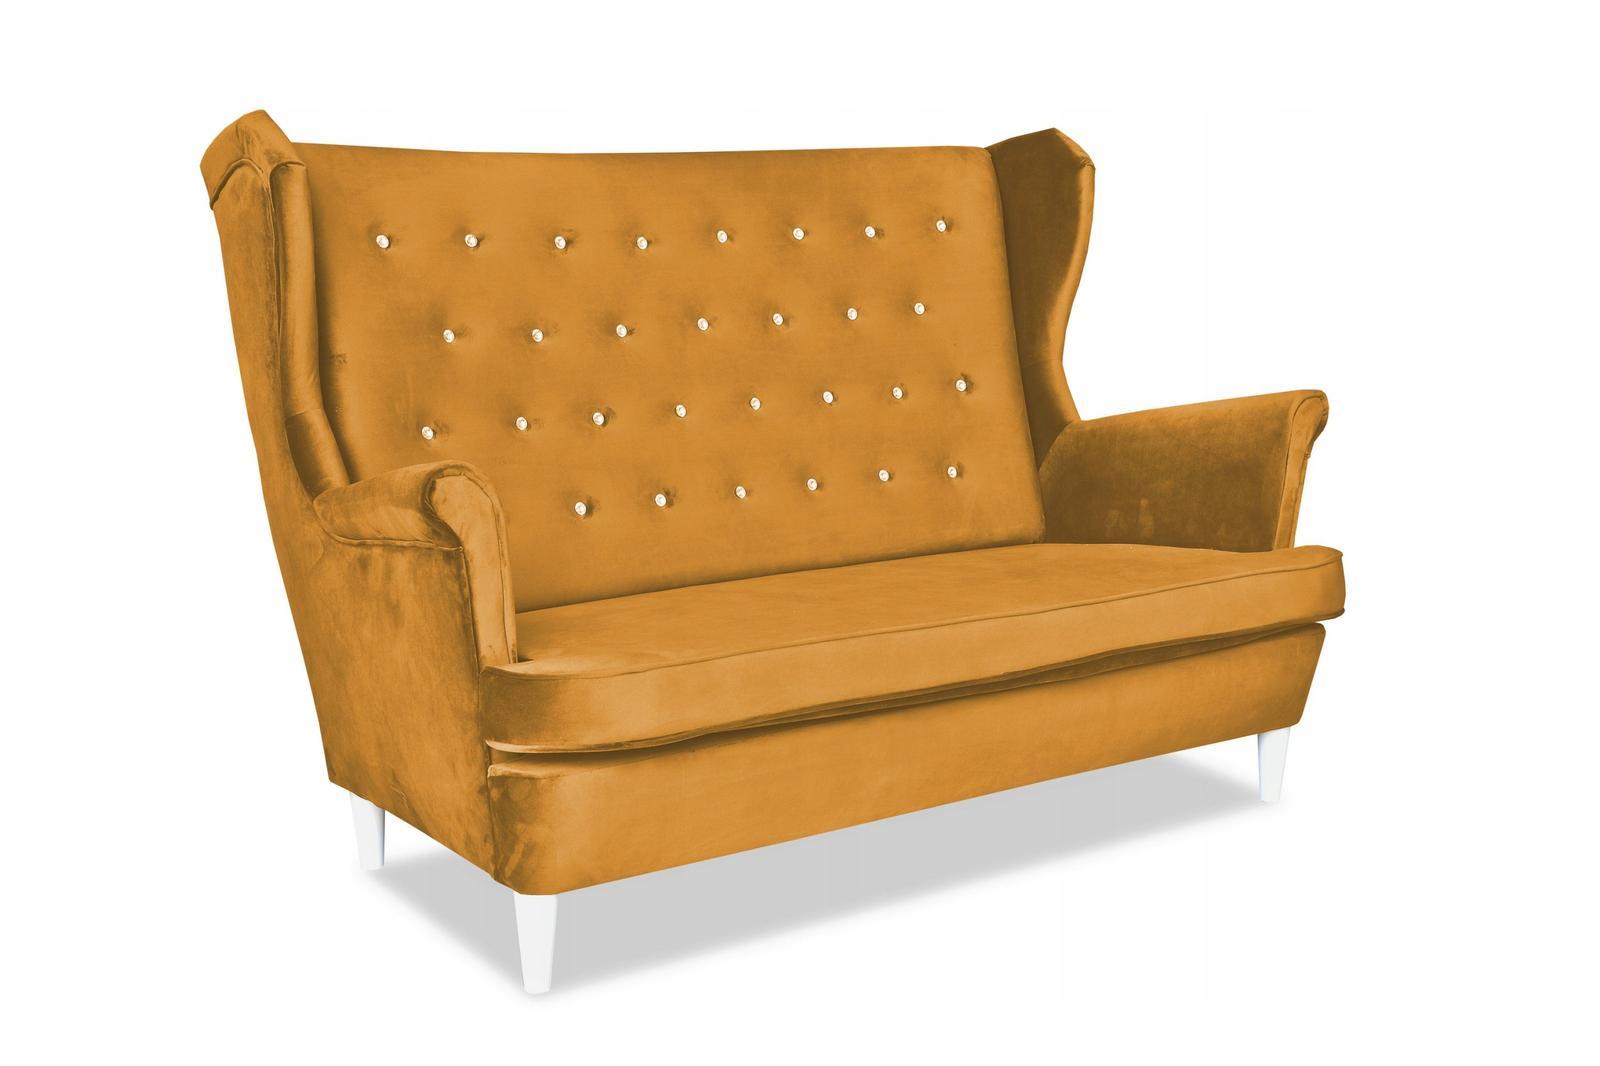 Zestaw wypoczynkowy sofa + 2 fotele Family Meble 1 Full Screen